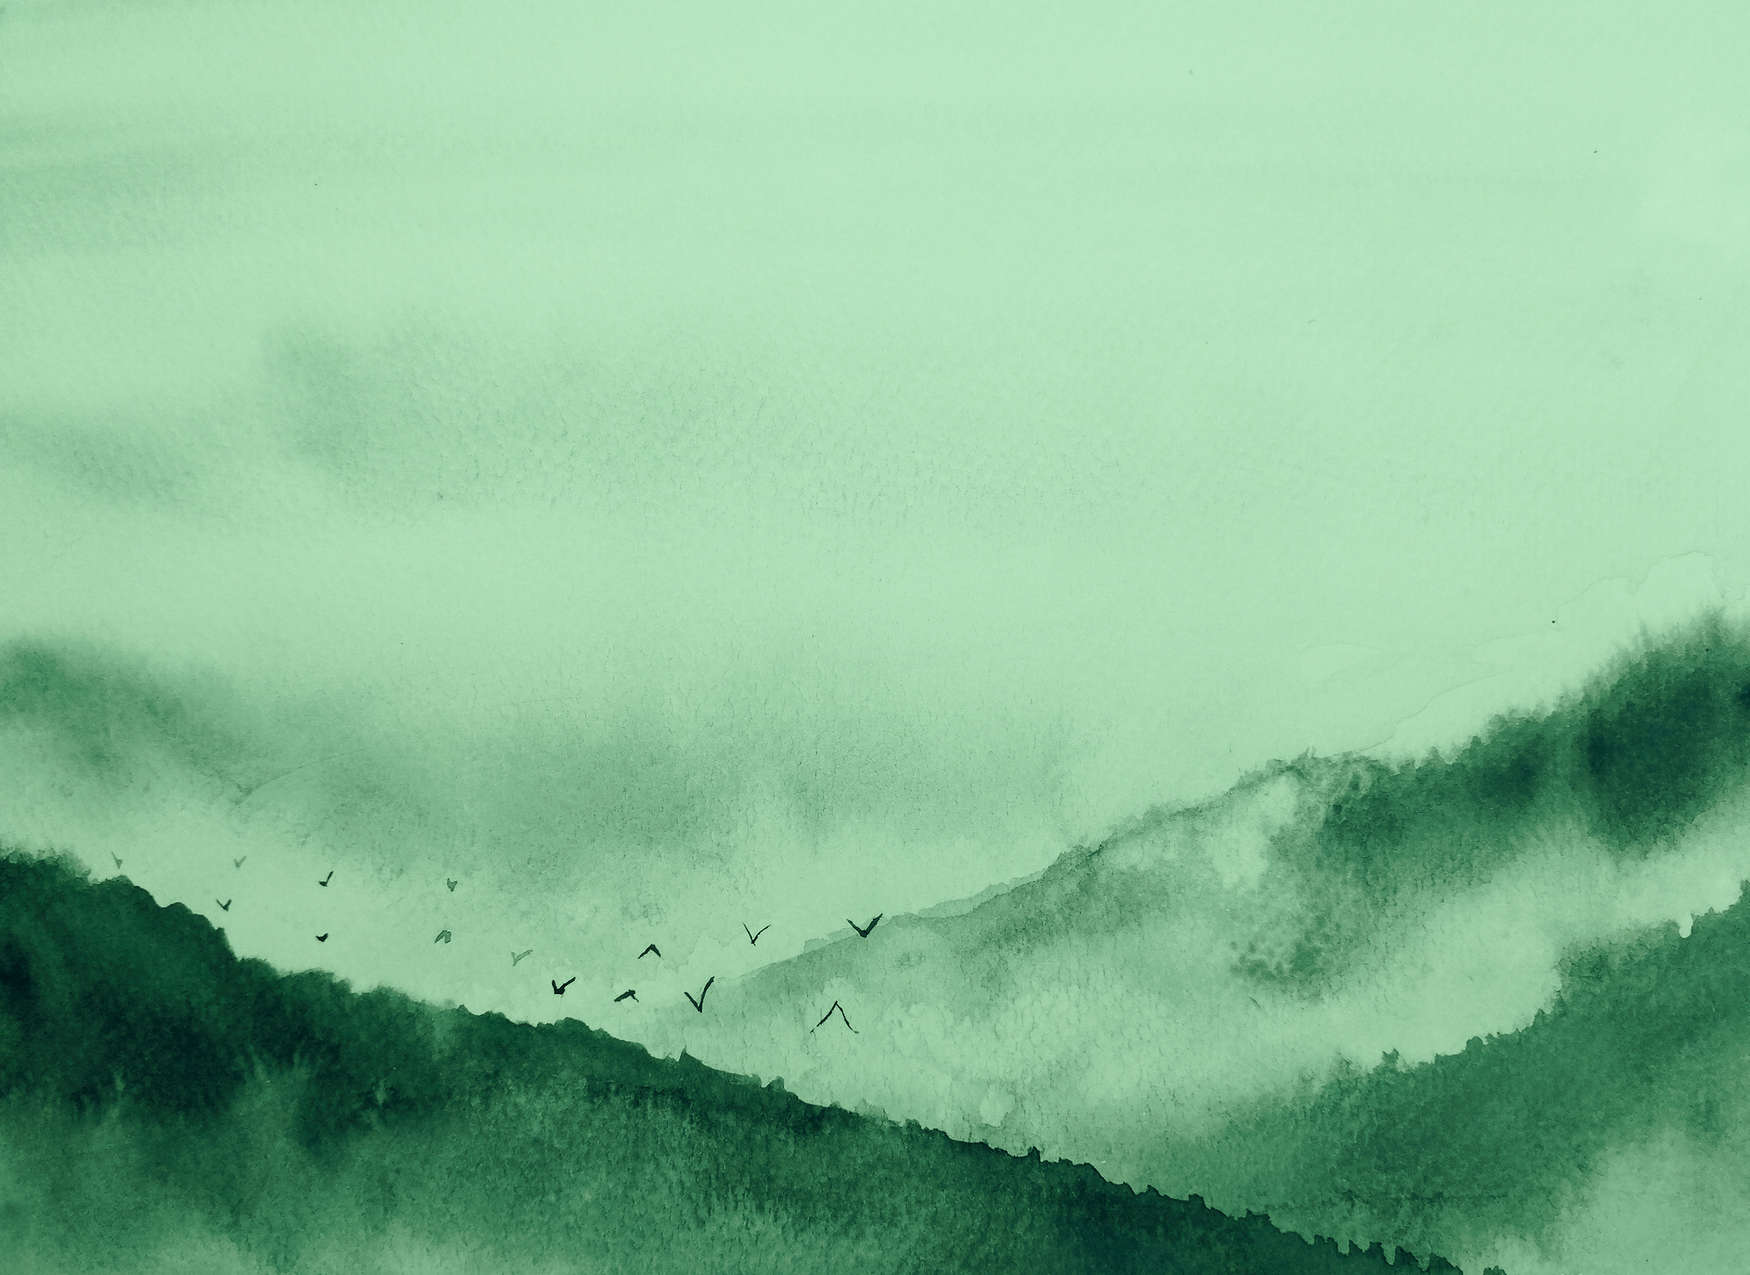             Mistig landschap in schilderstijl - Groen, Zwart
        